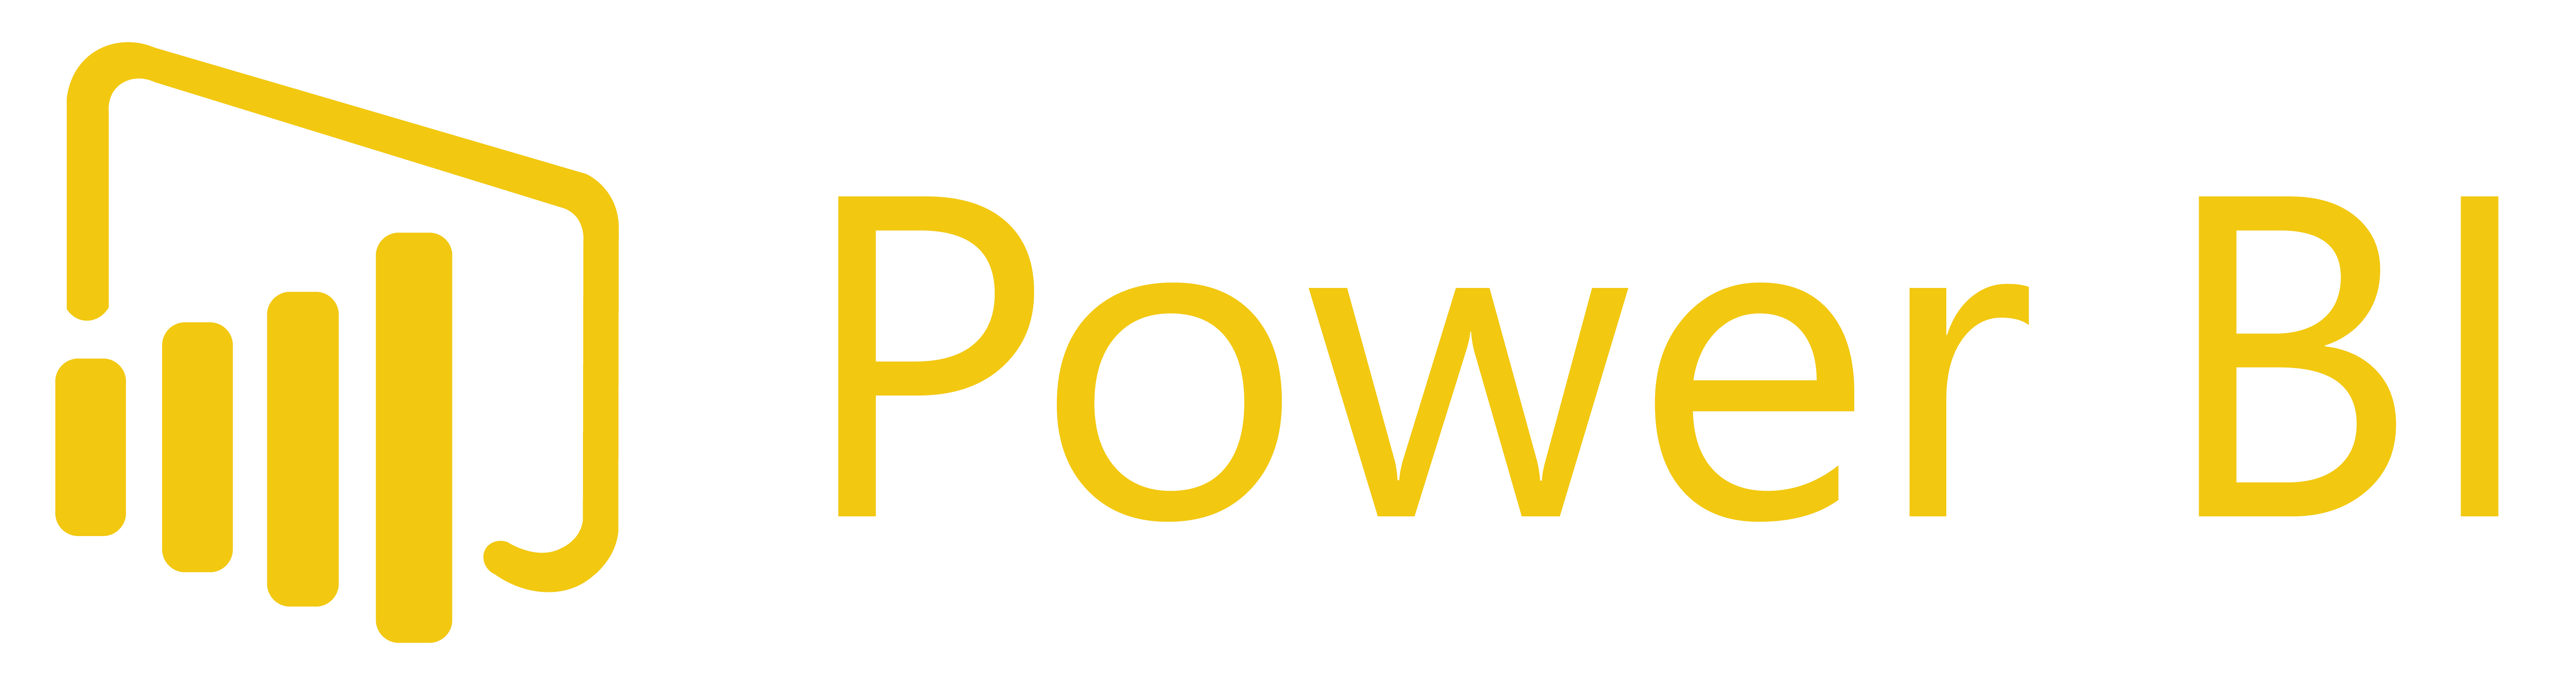 Мс повер. MS Power bi логотип. Power bi иконка. Логотип Microsoft Power bi PNG. Power bi логотип без фона.